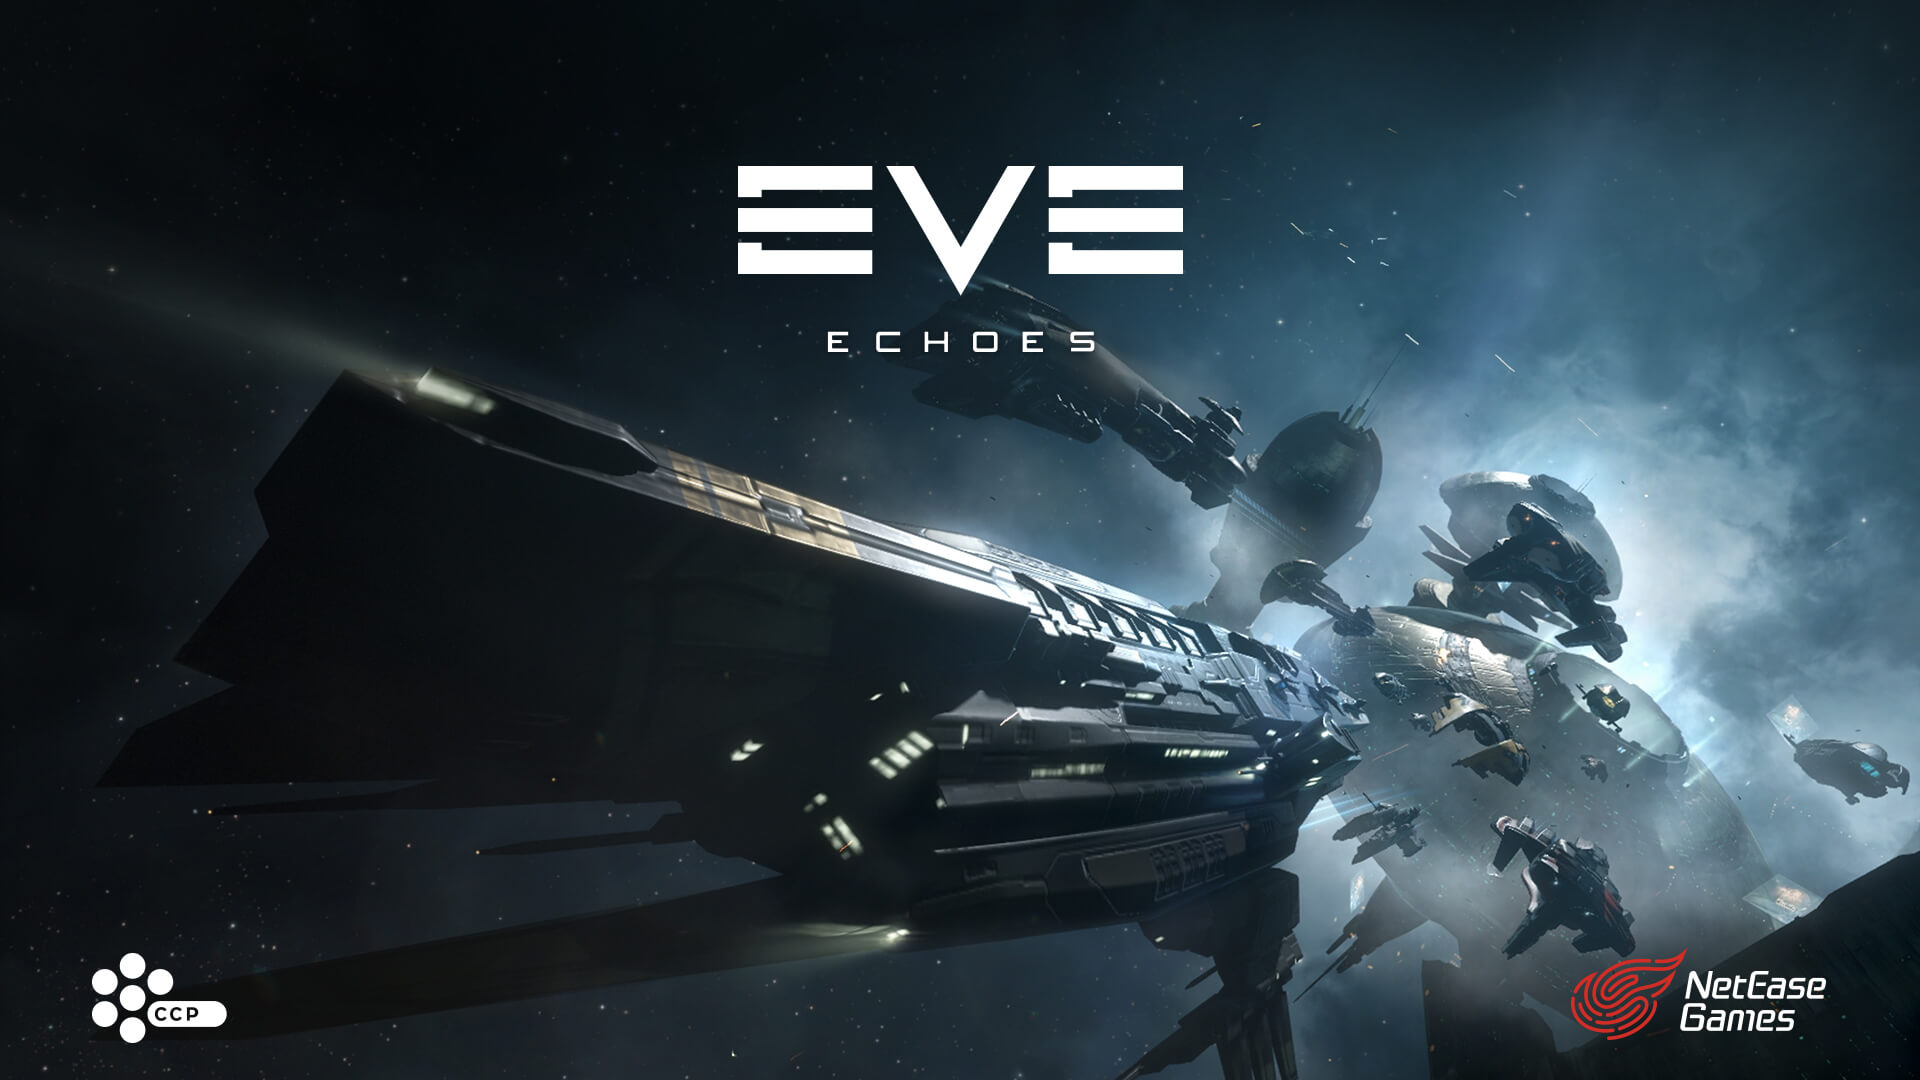 بسبب كورونا تأجيل إطلاق لعبة Eve Echoes إلى أغسطس القادم